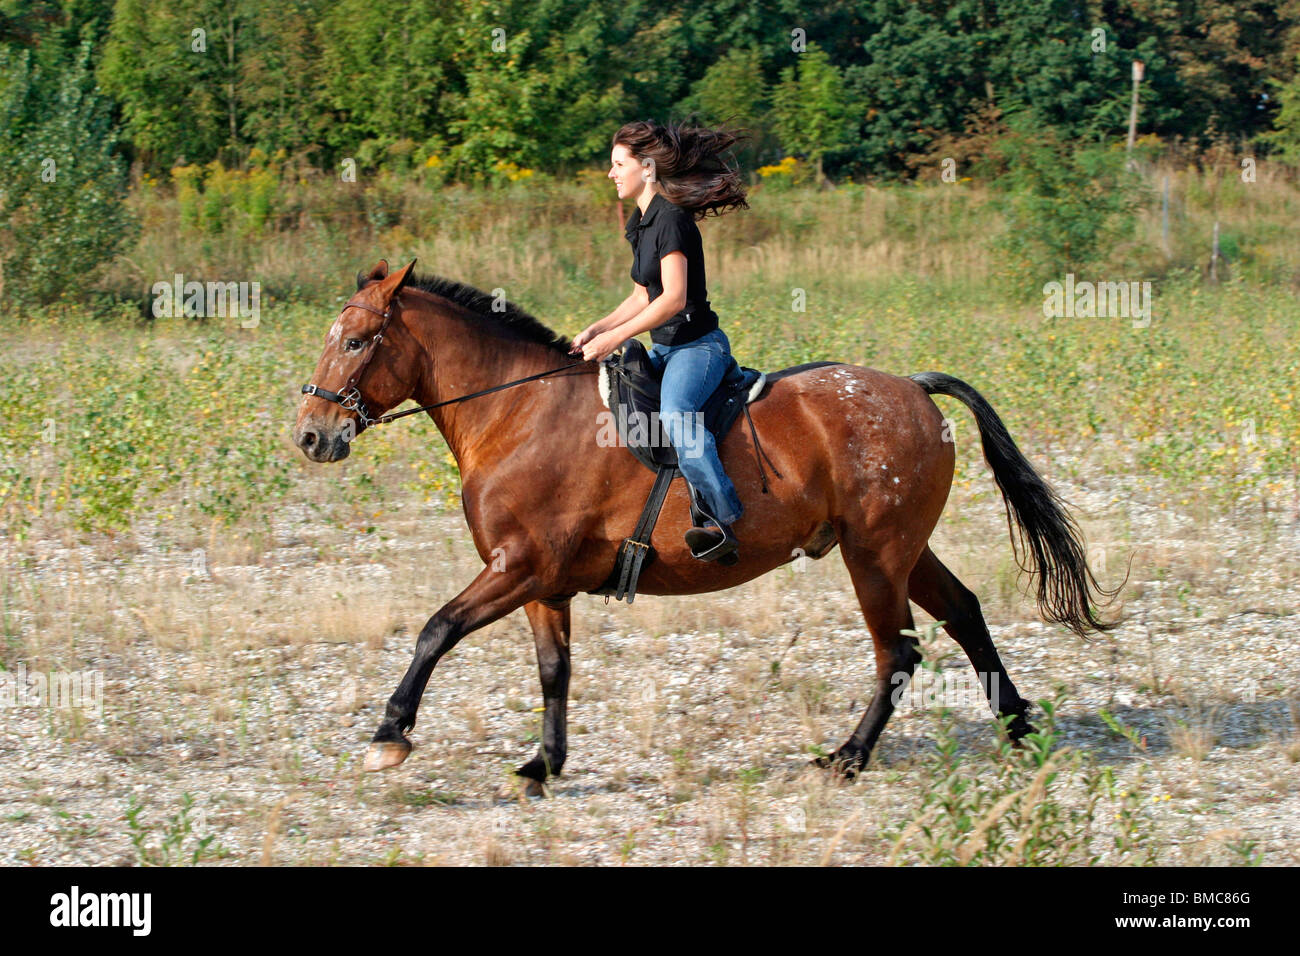 Freizeitreiten / riding Stock Photo - Alamy